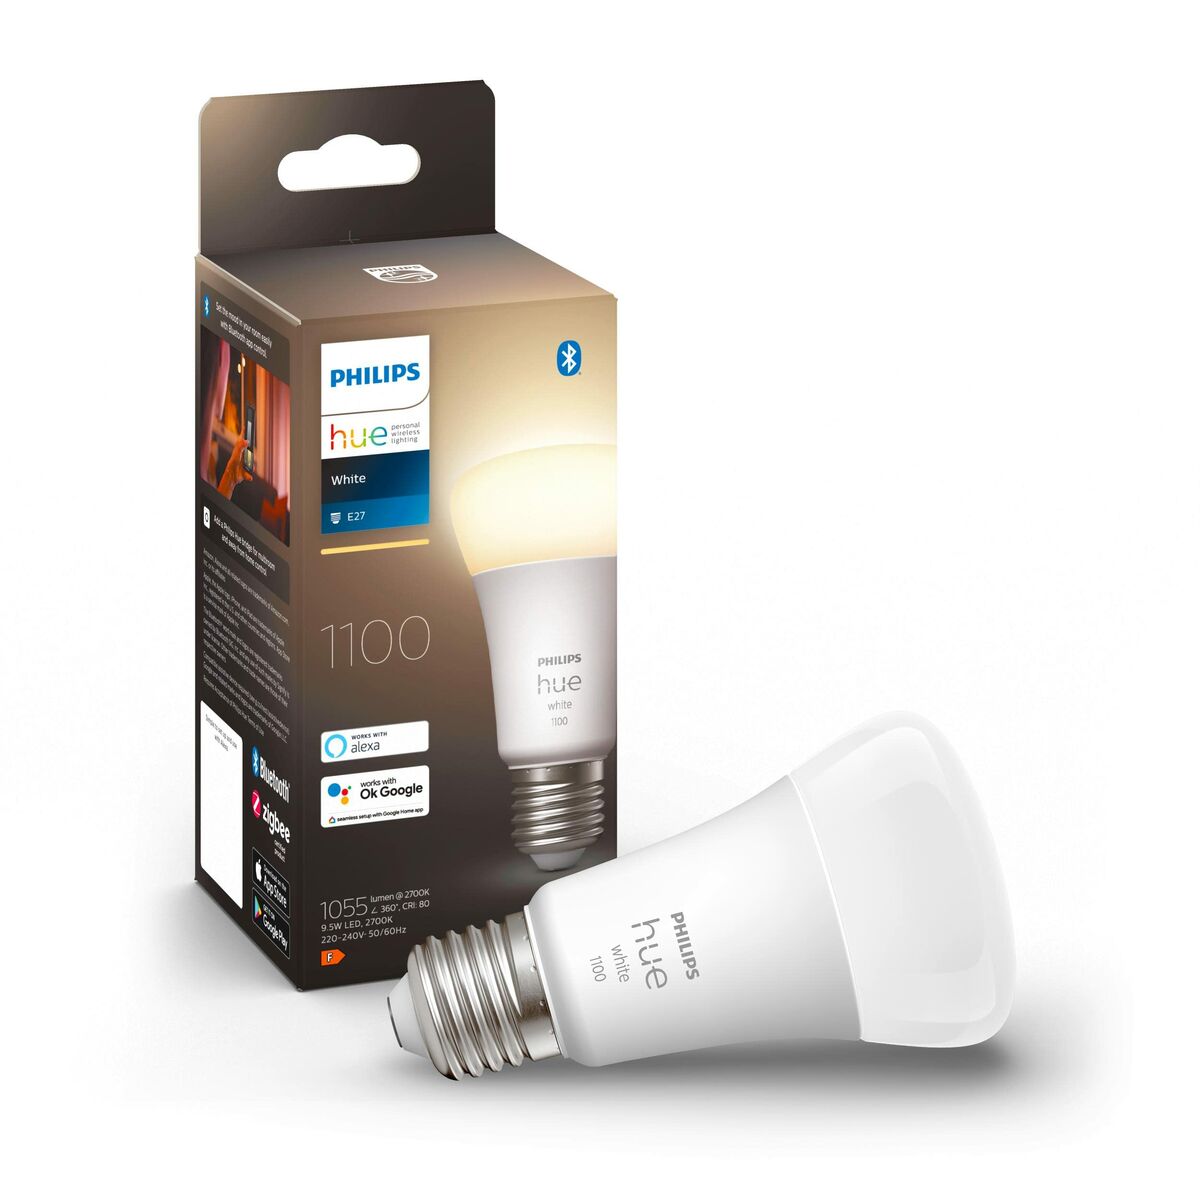 Smart Light bulb Philips E27 LED 9,5 W (Refurbished B)